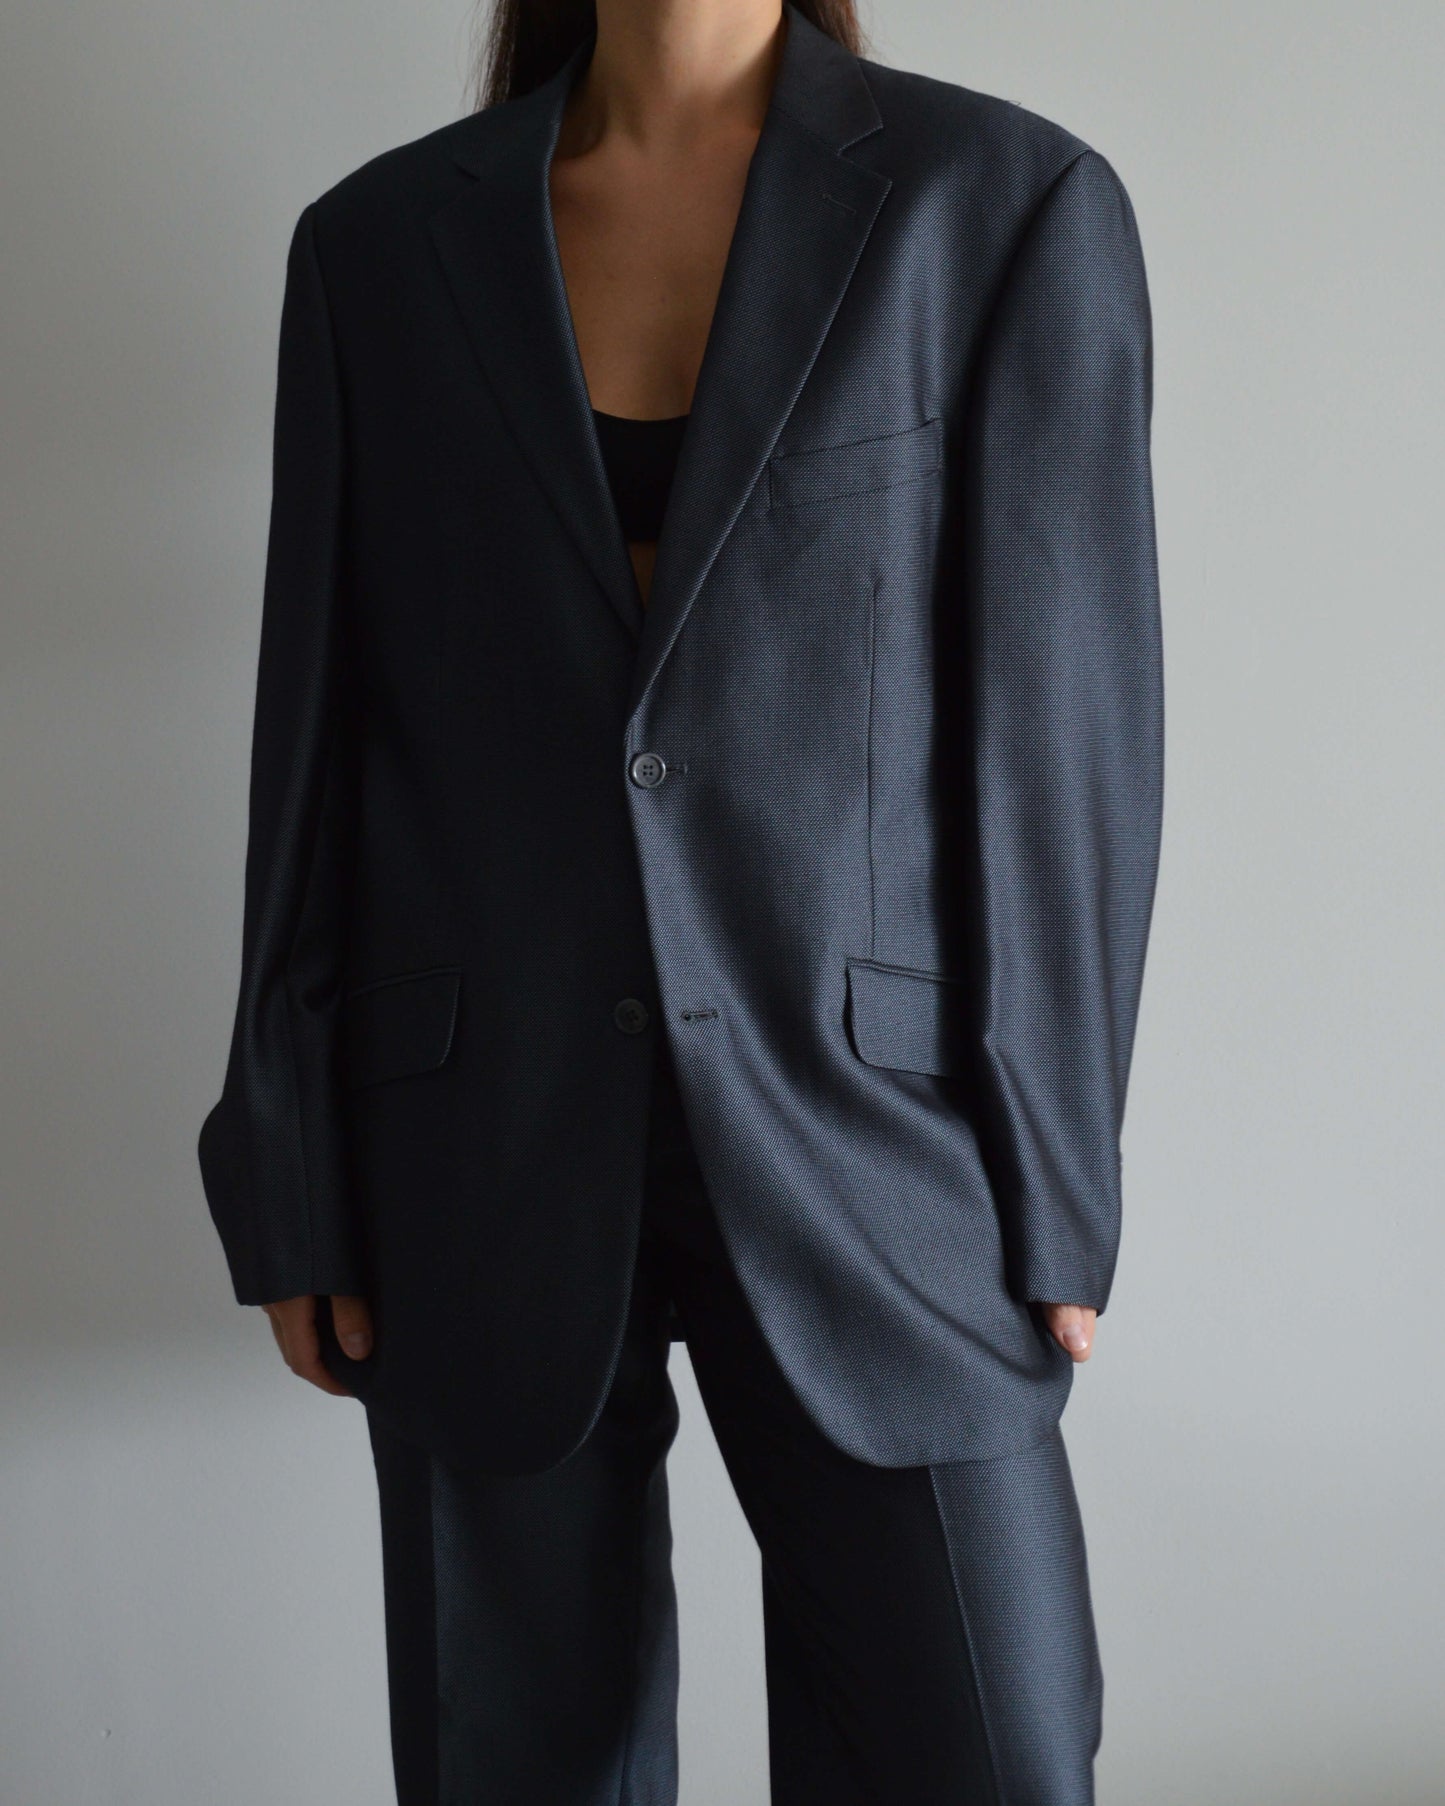 Suit - Perfect Shine Gray (M/L)